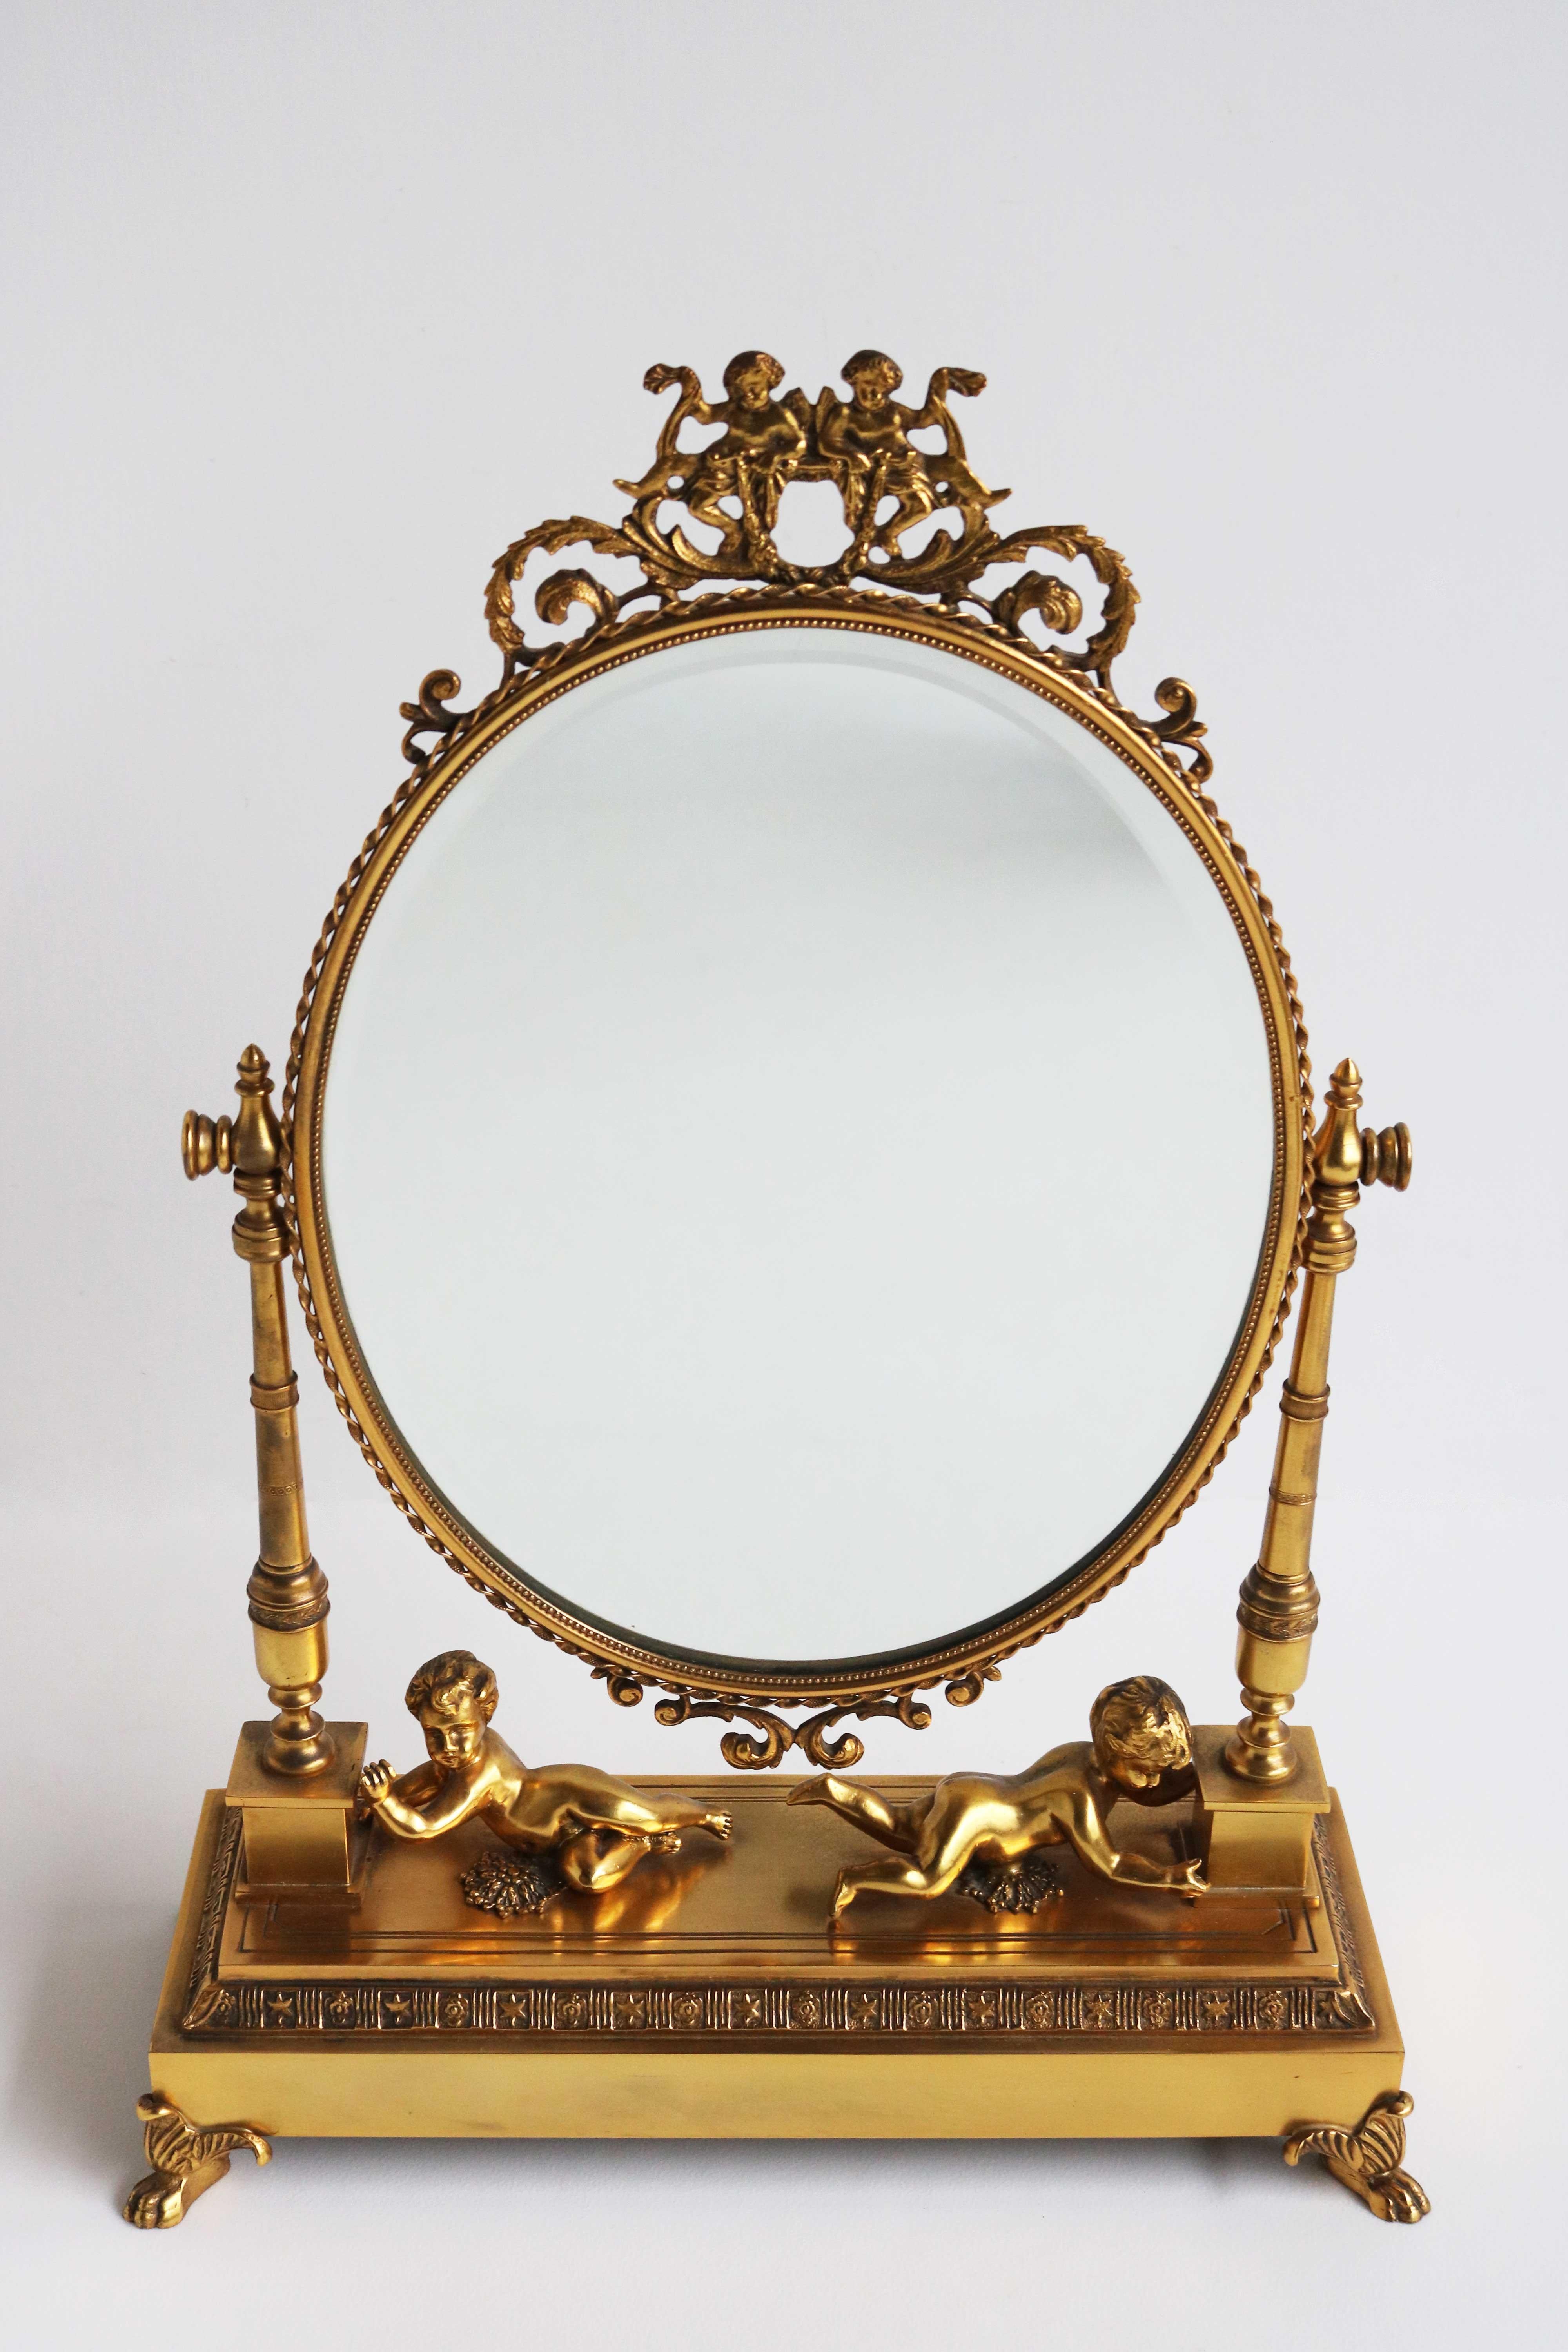 Magnifique miroir de toilette / vanity mirror / table mirror / tabletop mirror français ancien en bronze doré, avec miroir ovale à facettes pivotant et chérubins, vers 1880-1900.

Un luxueux miroir de coiffeuse en bronze doré de la fin du 19e